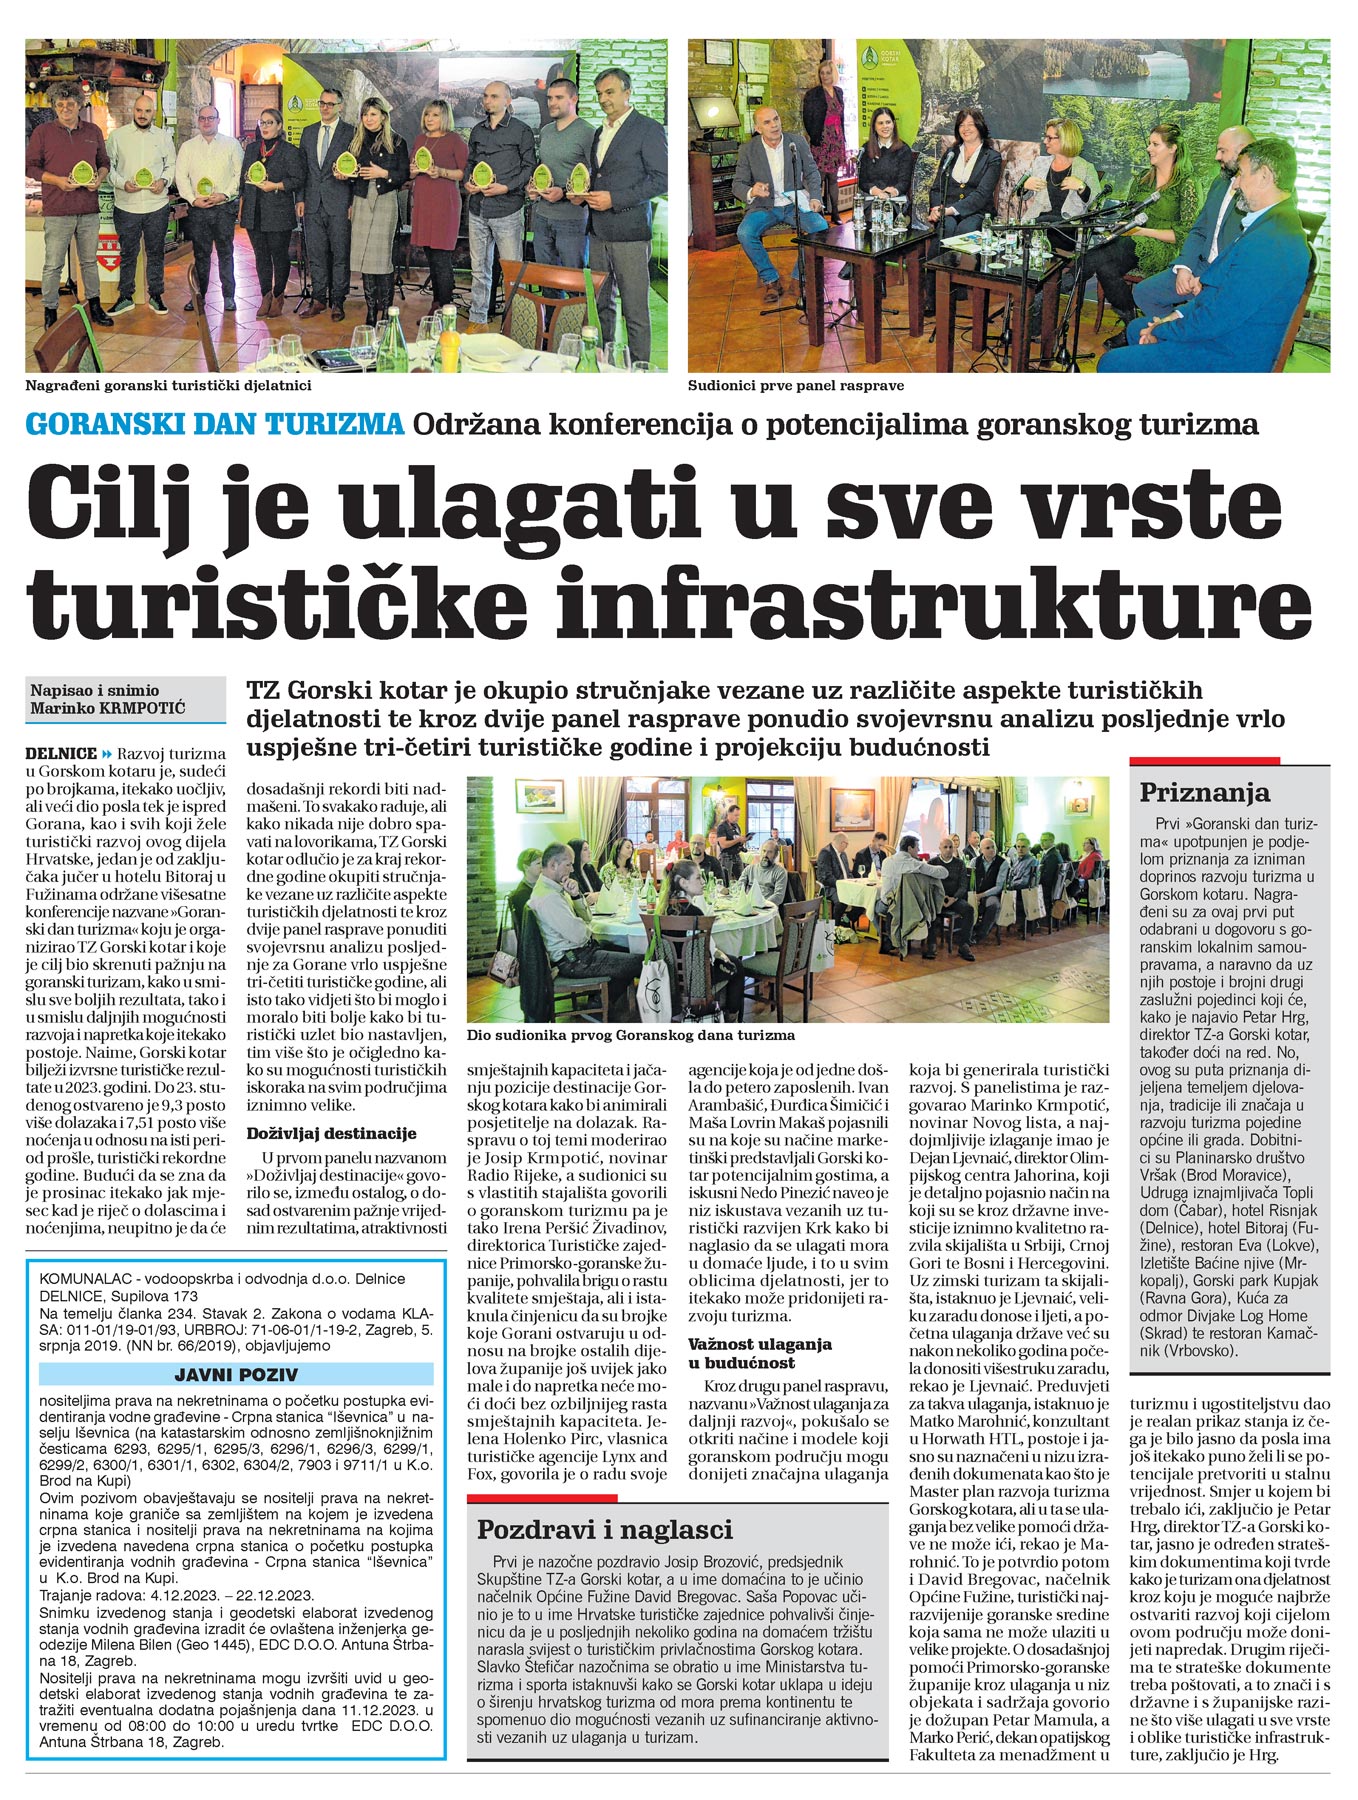 goranski dan turizma, novi list, članak, održana konferencija o potencijalima goranskog turizma